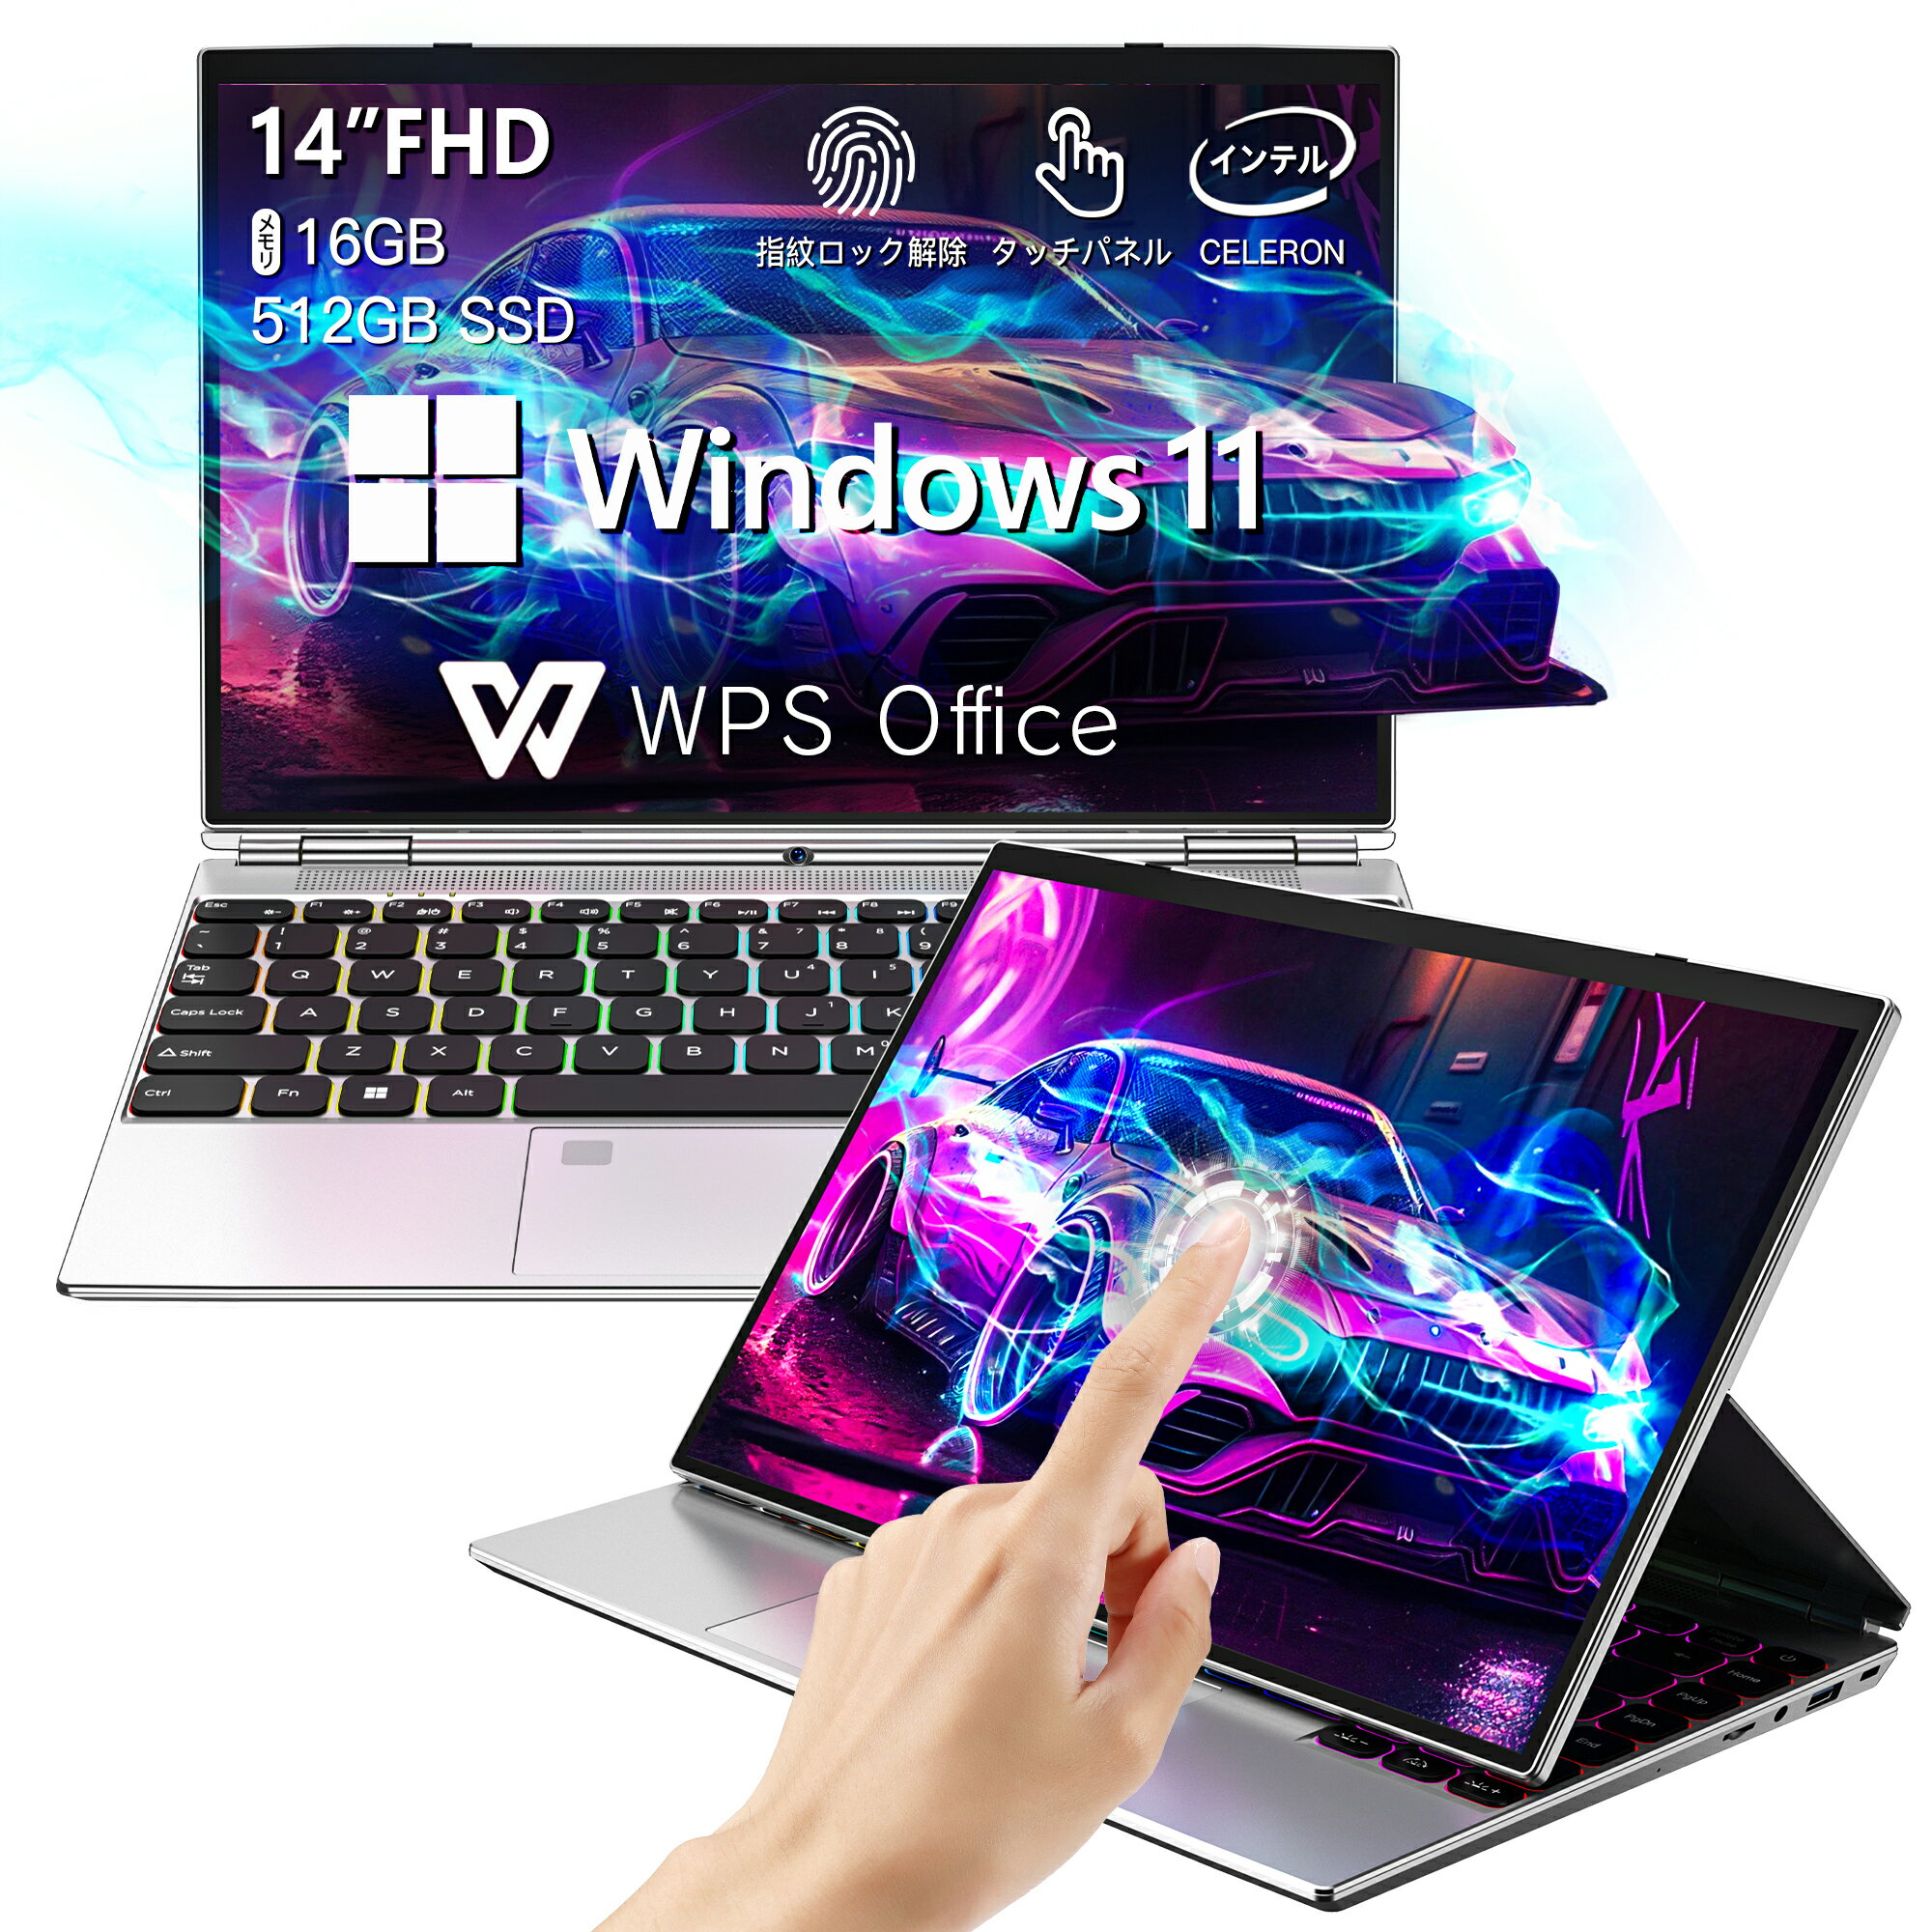 Windows タブレット ノートパソコン ノートPC 14インチ/Windows 11/Office搭載/第11世代Celeron N5105/16GB 512GB SSD/SSD拡張可能 タッチパネル14" FHD IPS 1920x1200/指紋認証付き/バクライトキーボード/200万画素 WEBカメラ/5G WiFi/Bluetooth/mini HDMI Dobios 4-in-1タブレットPC